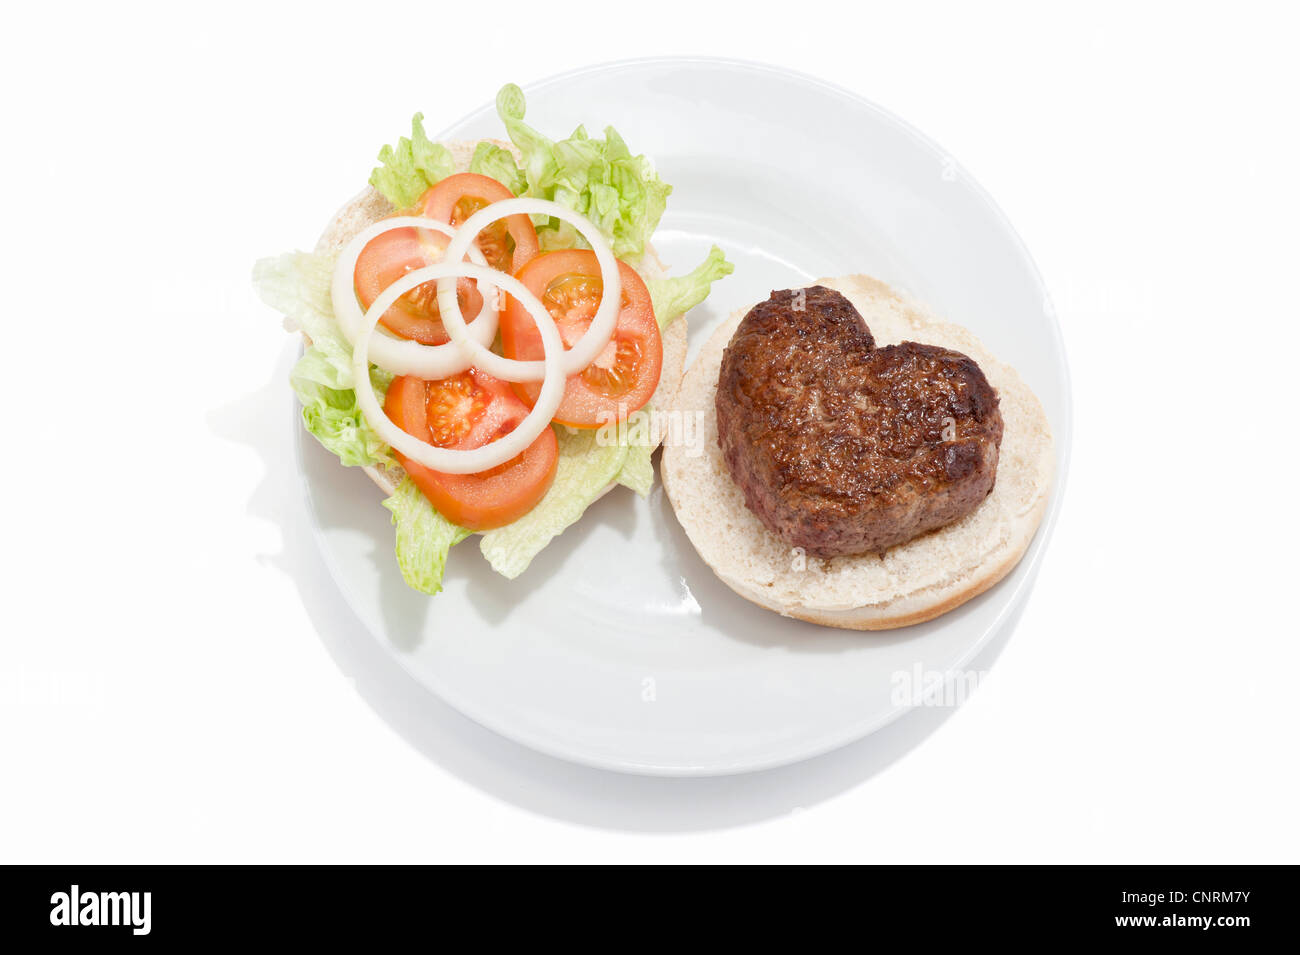 Eine herzförmige Beef-Burger auf einem Brötchen mit einem Beilagensalat Stockfoto